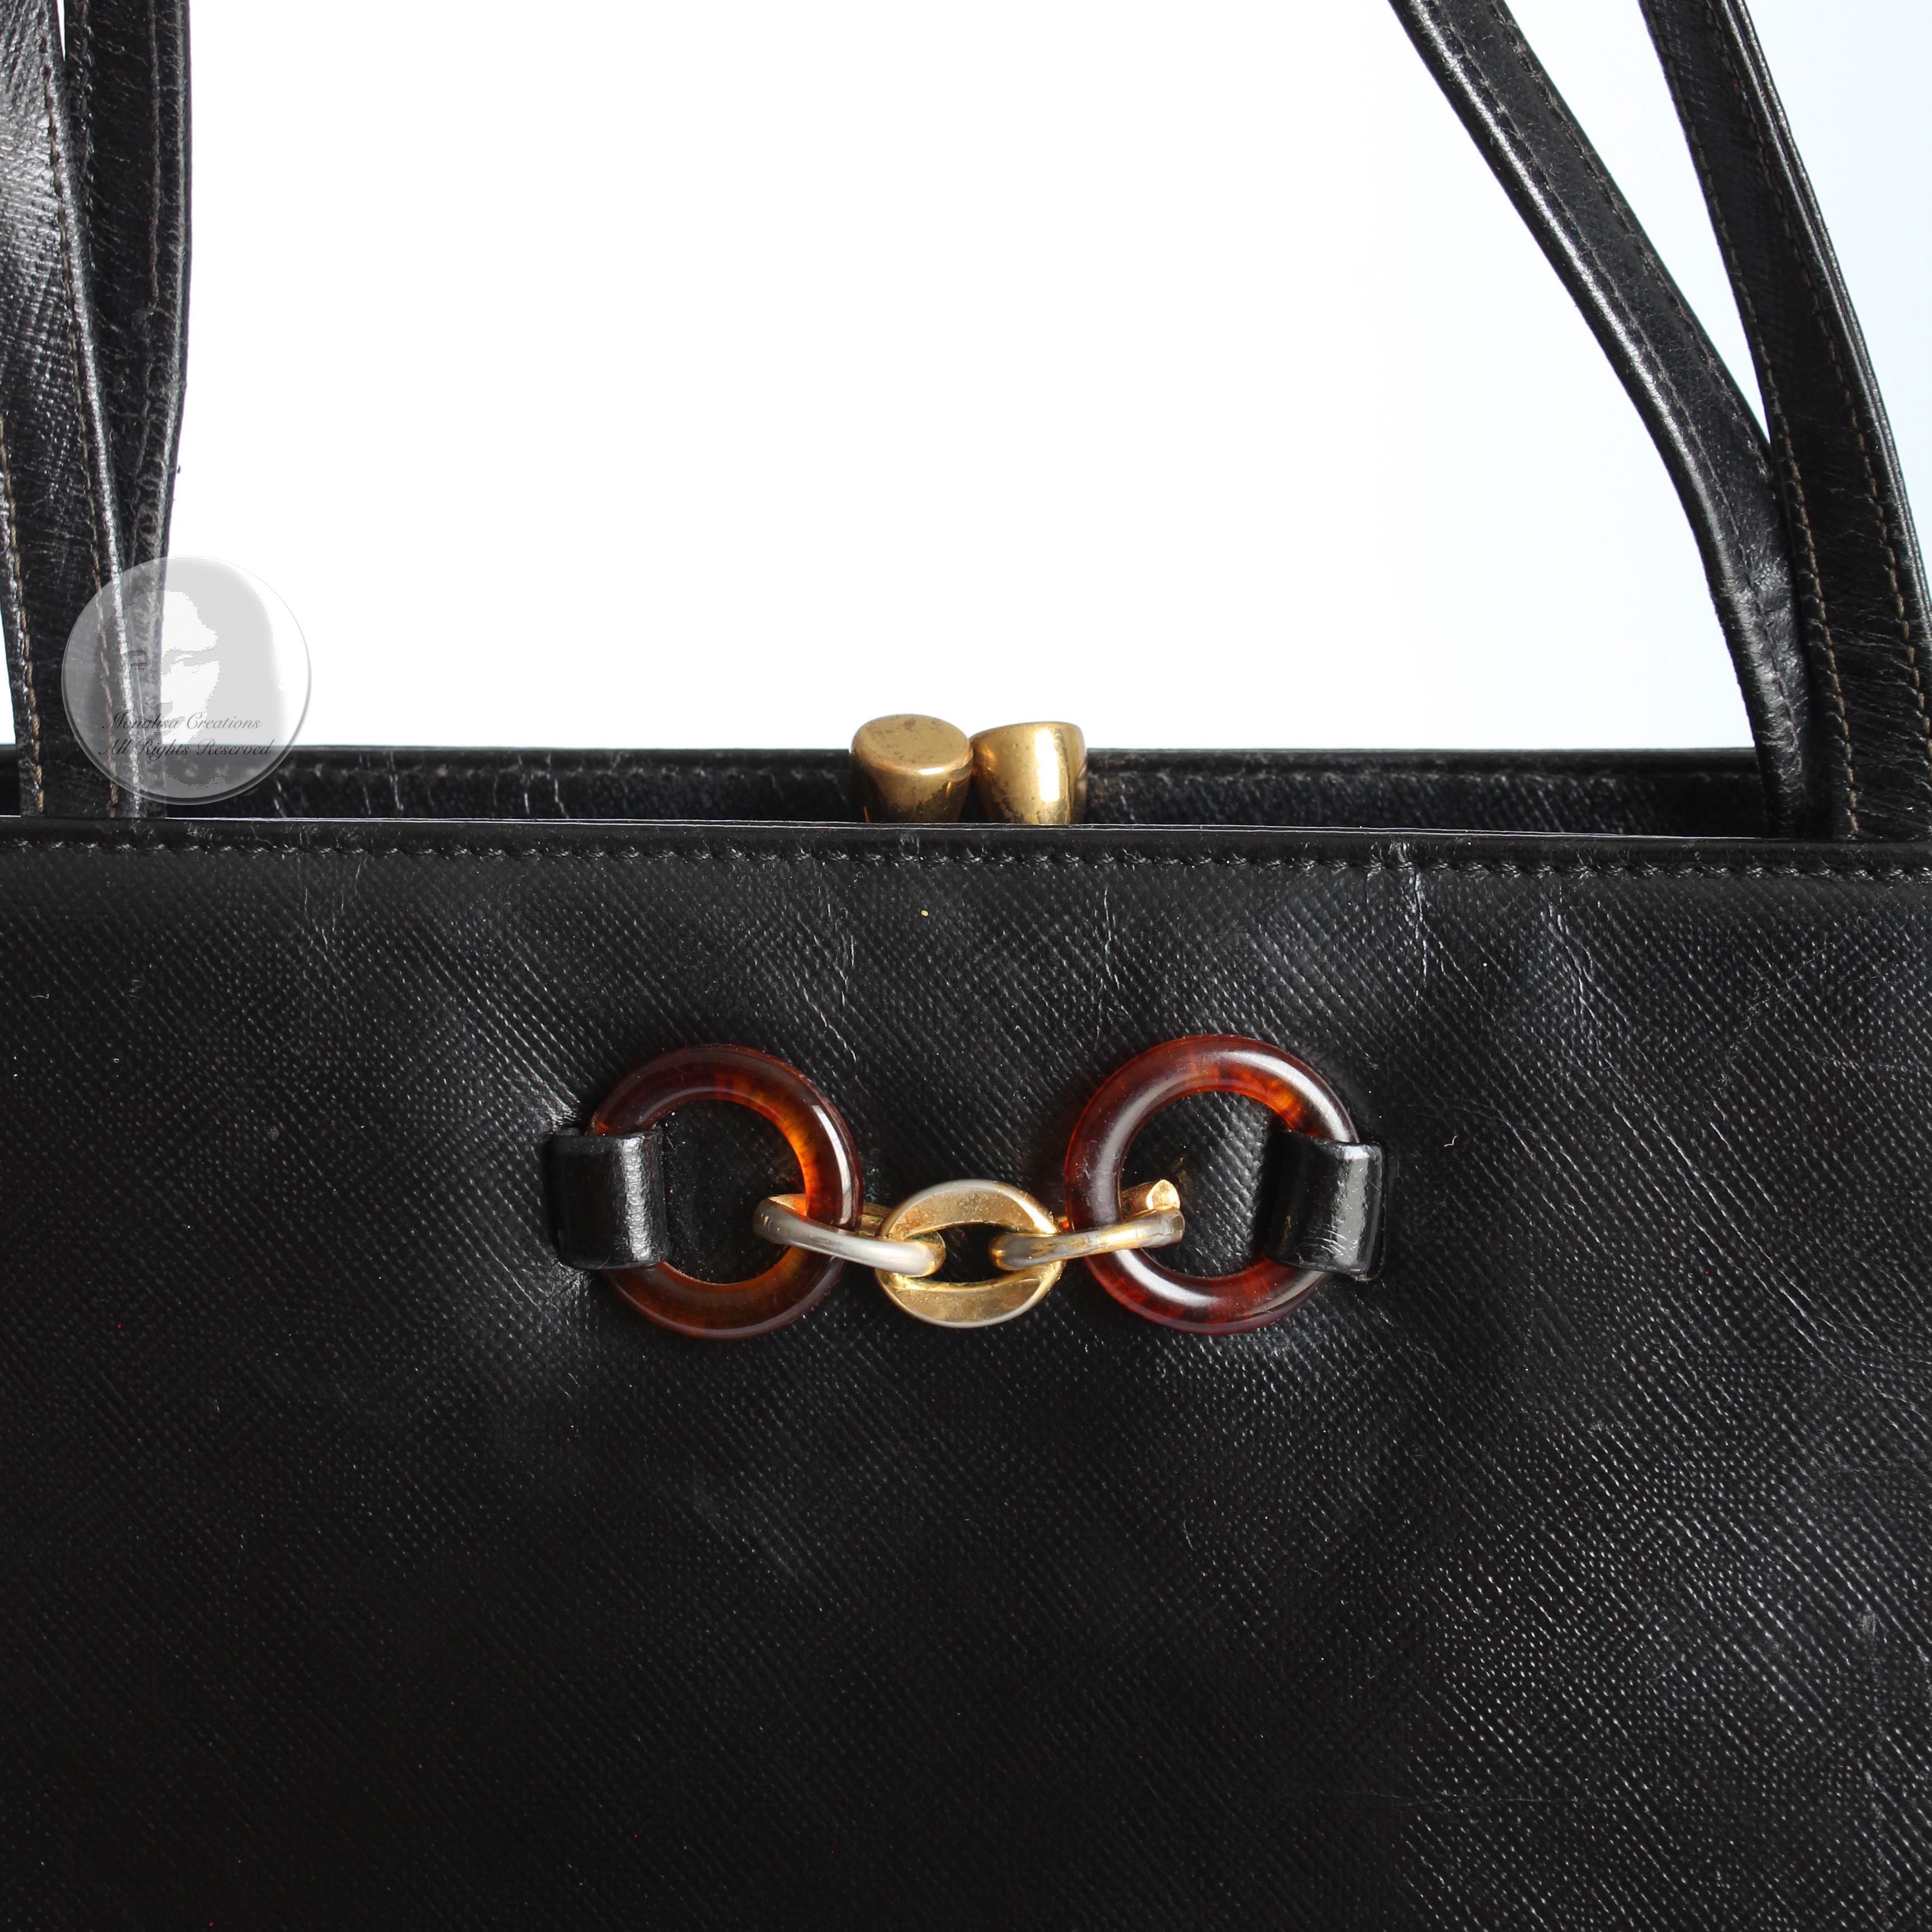 Bienen-Davis Evening Bag Black Saffiano Textured Leather Rare Vintage 1970s For Sale 6